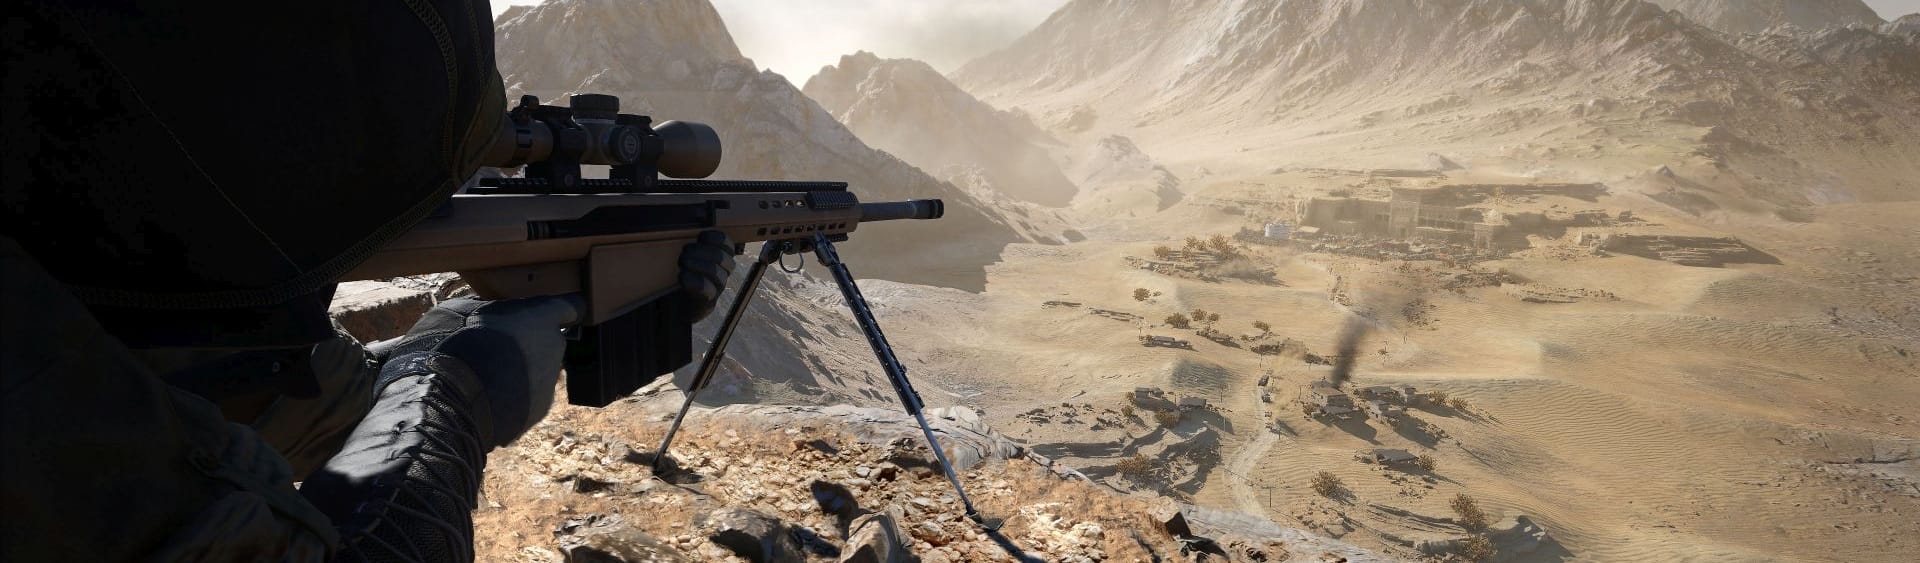 لعبة Sniper Ghost Warrior Contracts 2 هتقدم تحسينات للجيل الجديد